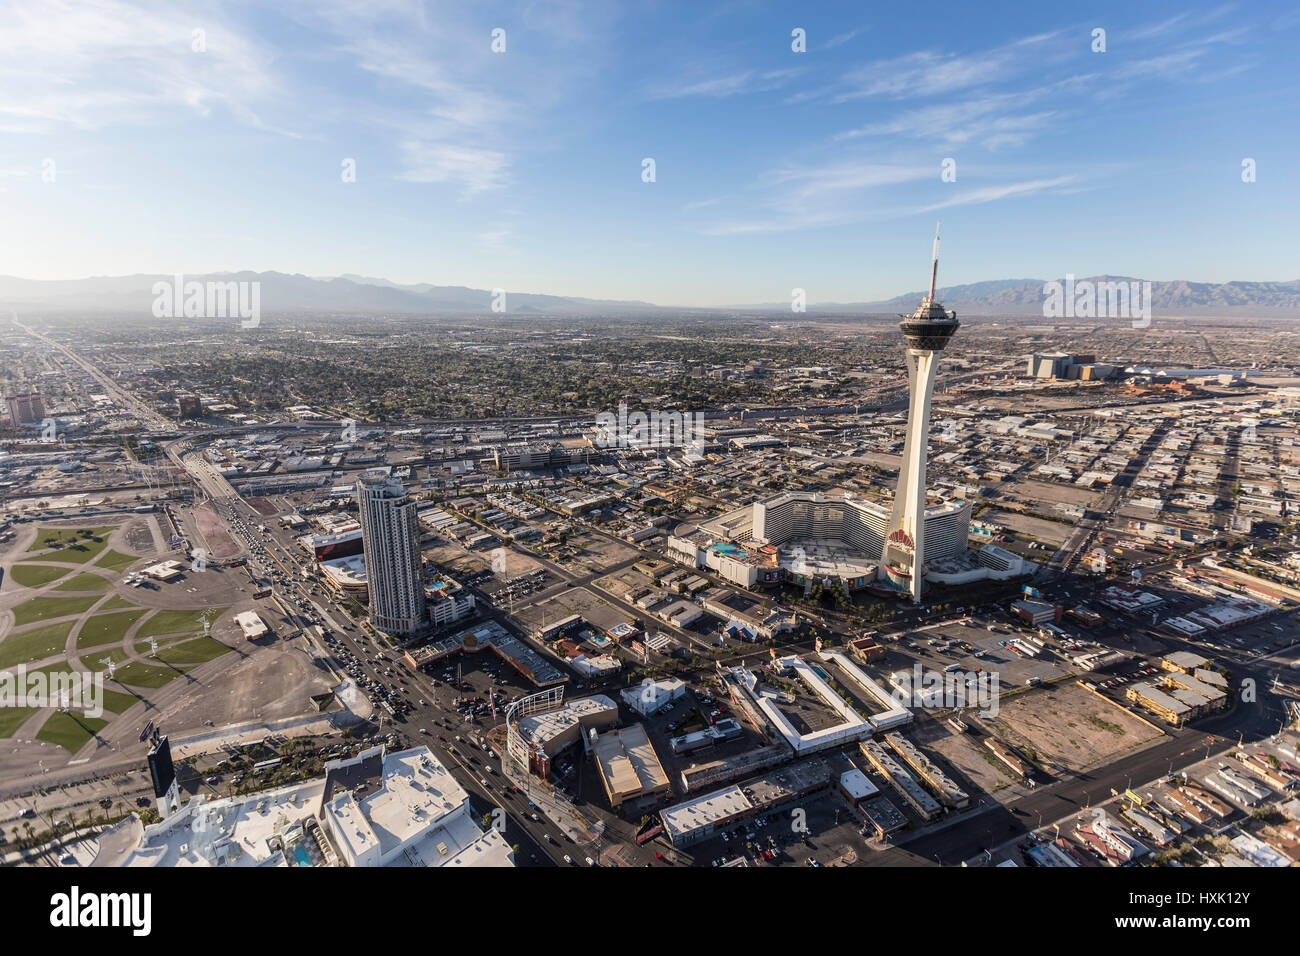 Las Vegas, Nevada, USA - Mars 13, 2017 : Vue aérienne de casino resorts le long de la Strip de Las Vegas dans le sud du Nevada. Banque D'Images